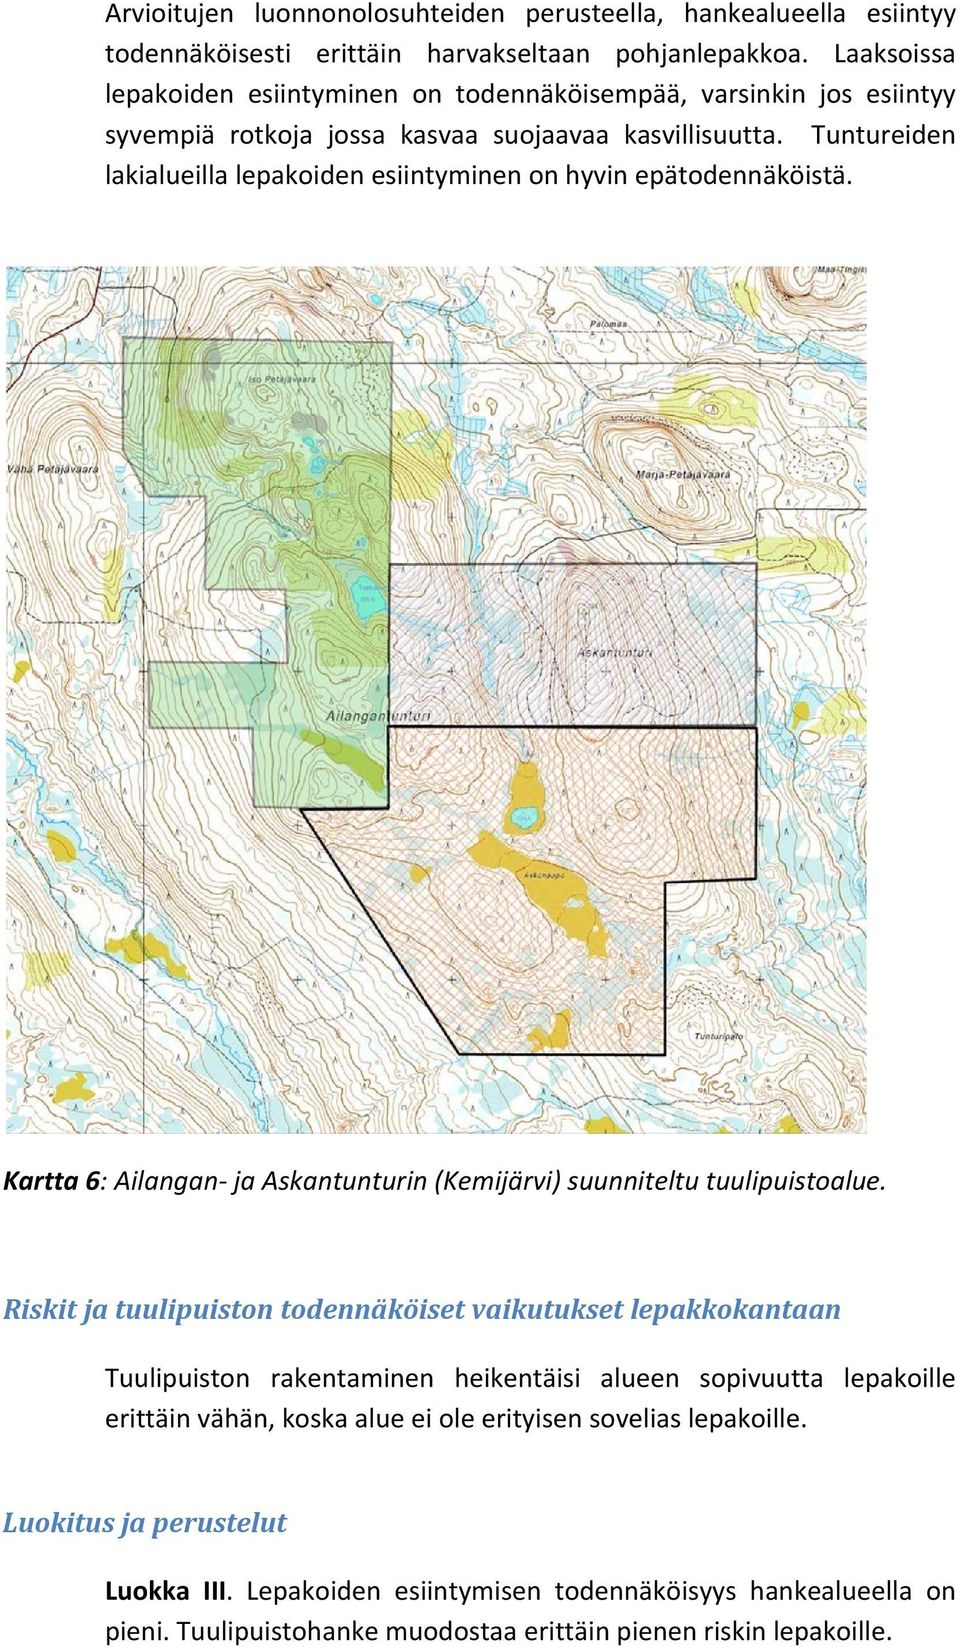 Tuntureiden lakialueilla lepakoiden esiintyminen on hyvin epätodennäköistä. Kartta 6: Ailangan ja Askantunturin (Kemijärvi) suunniteltu tuulipuistoalue.